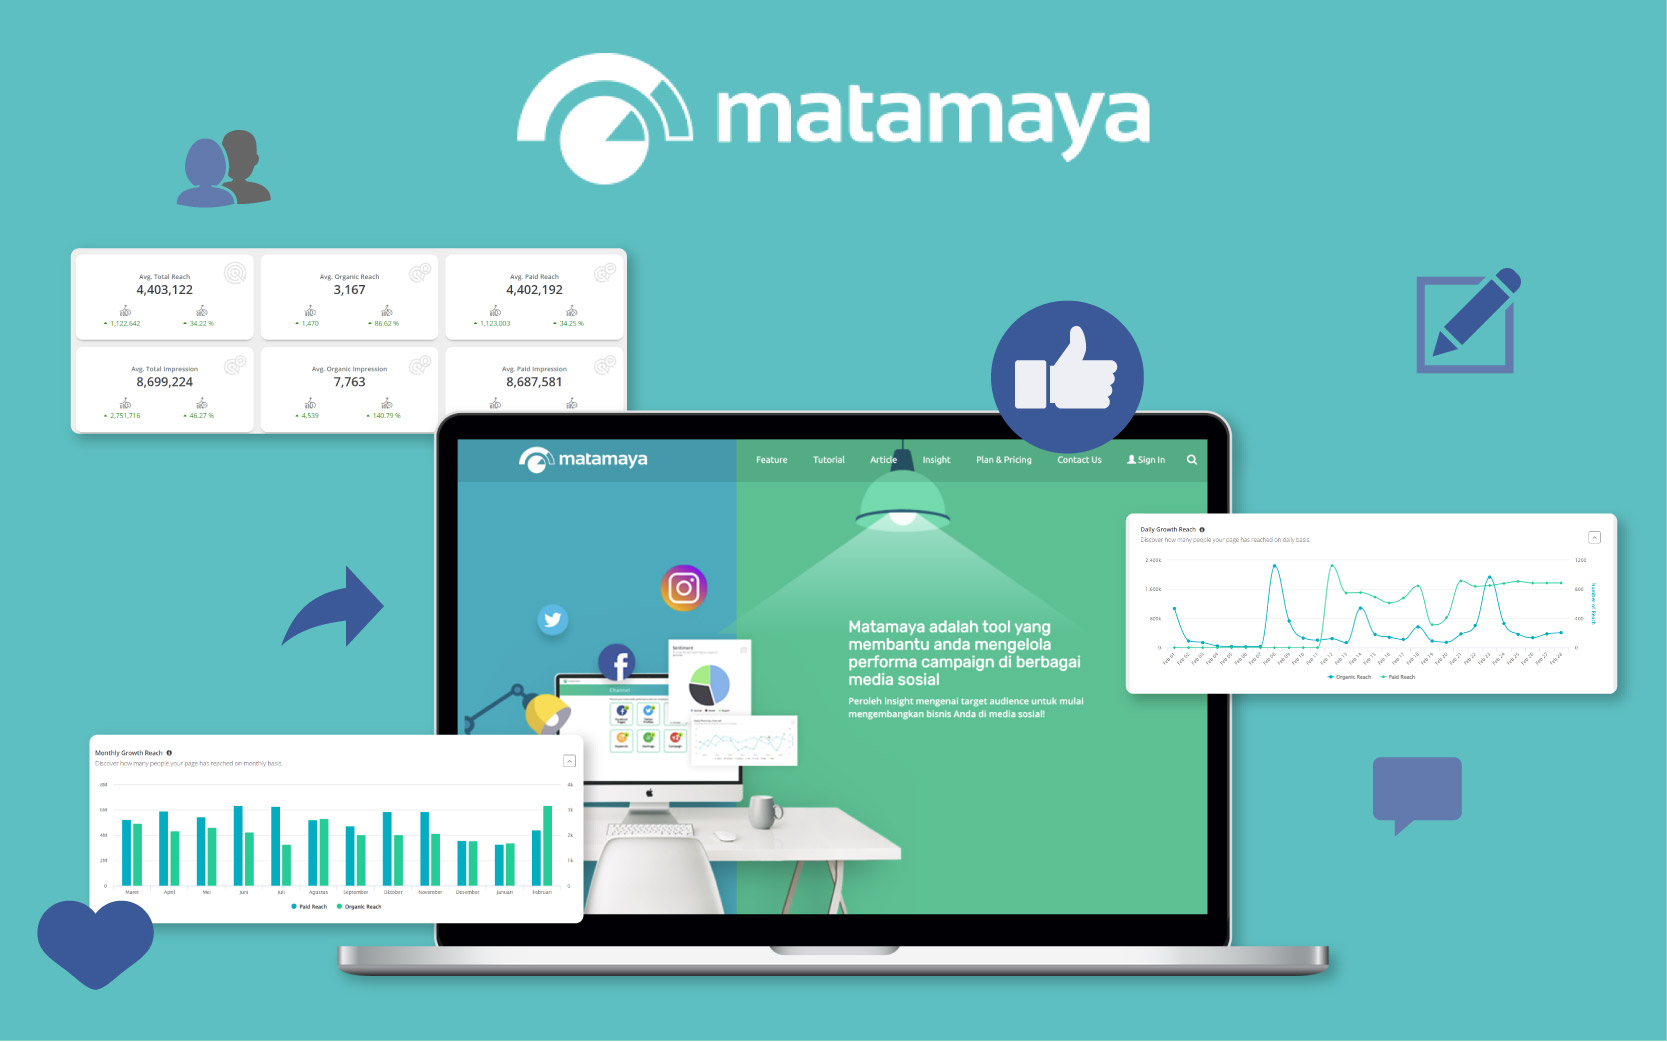 Facebook Page Analysis - Matamaya